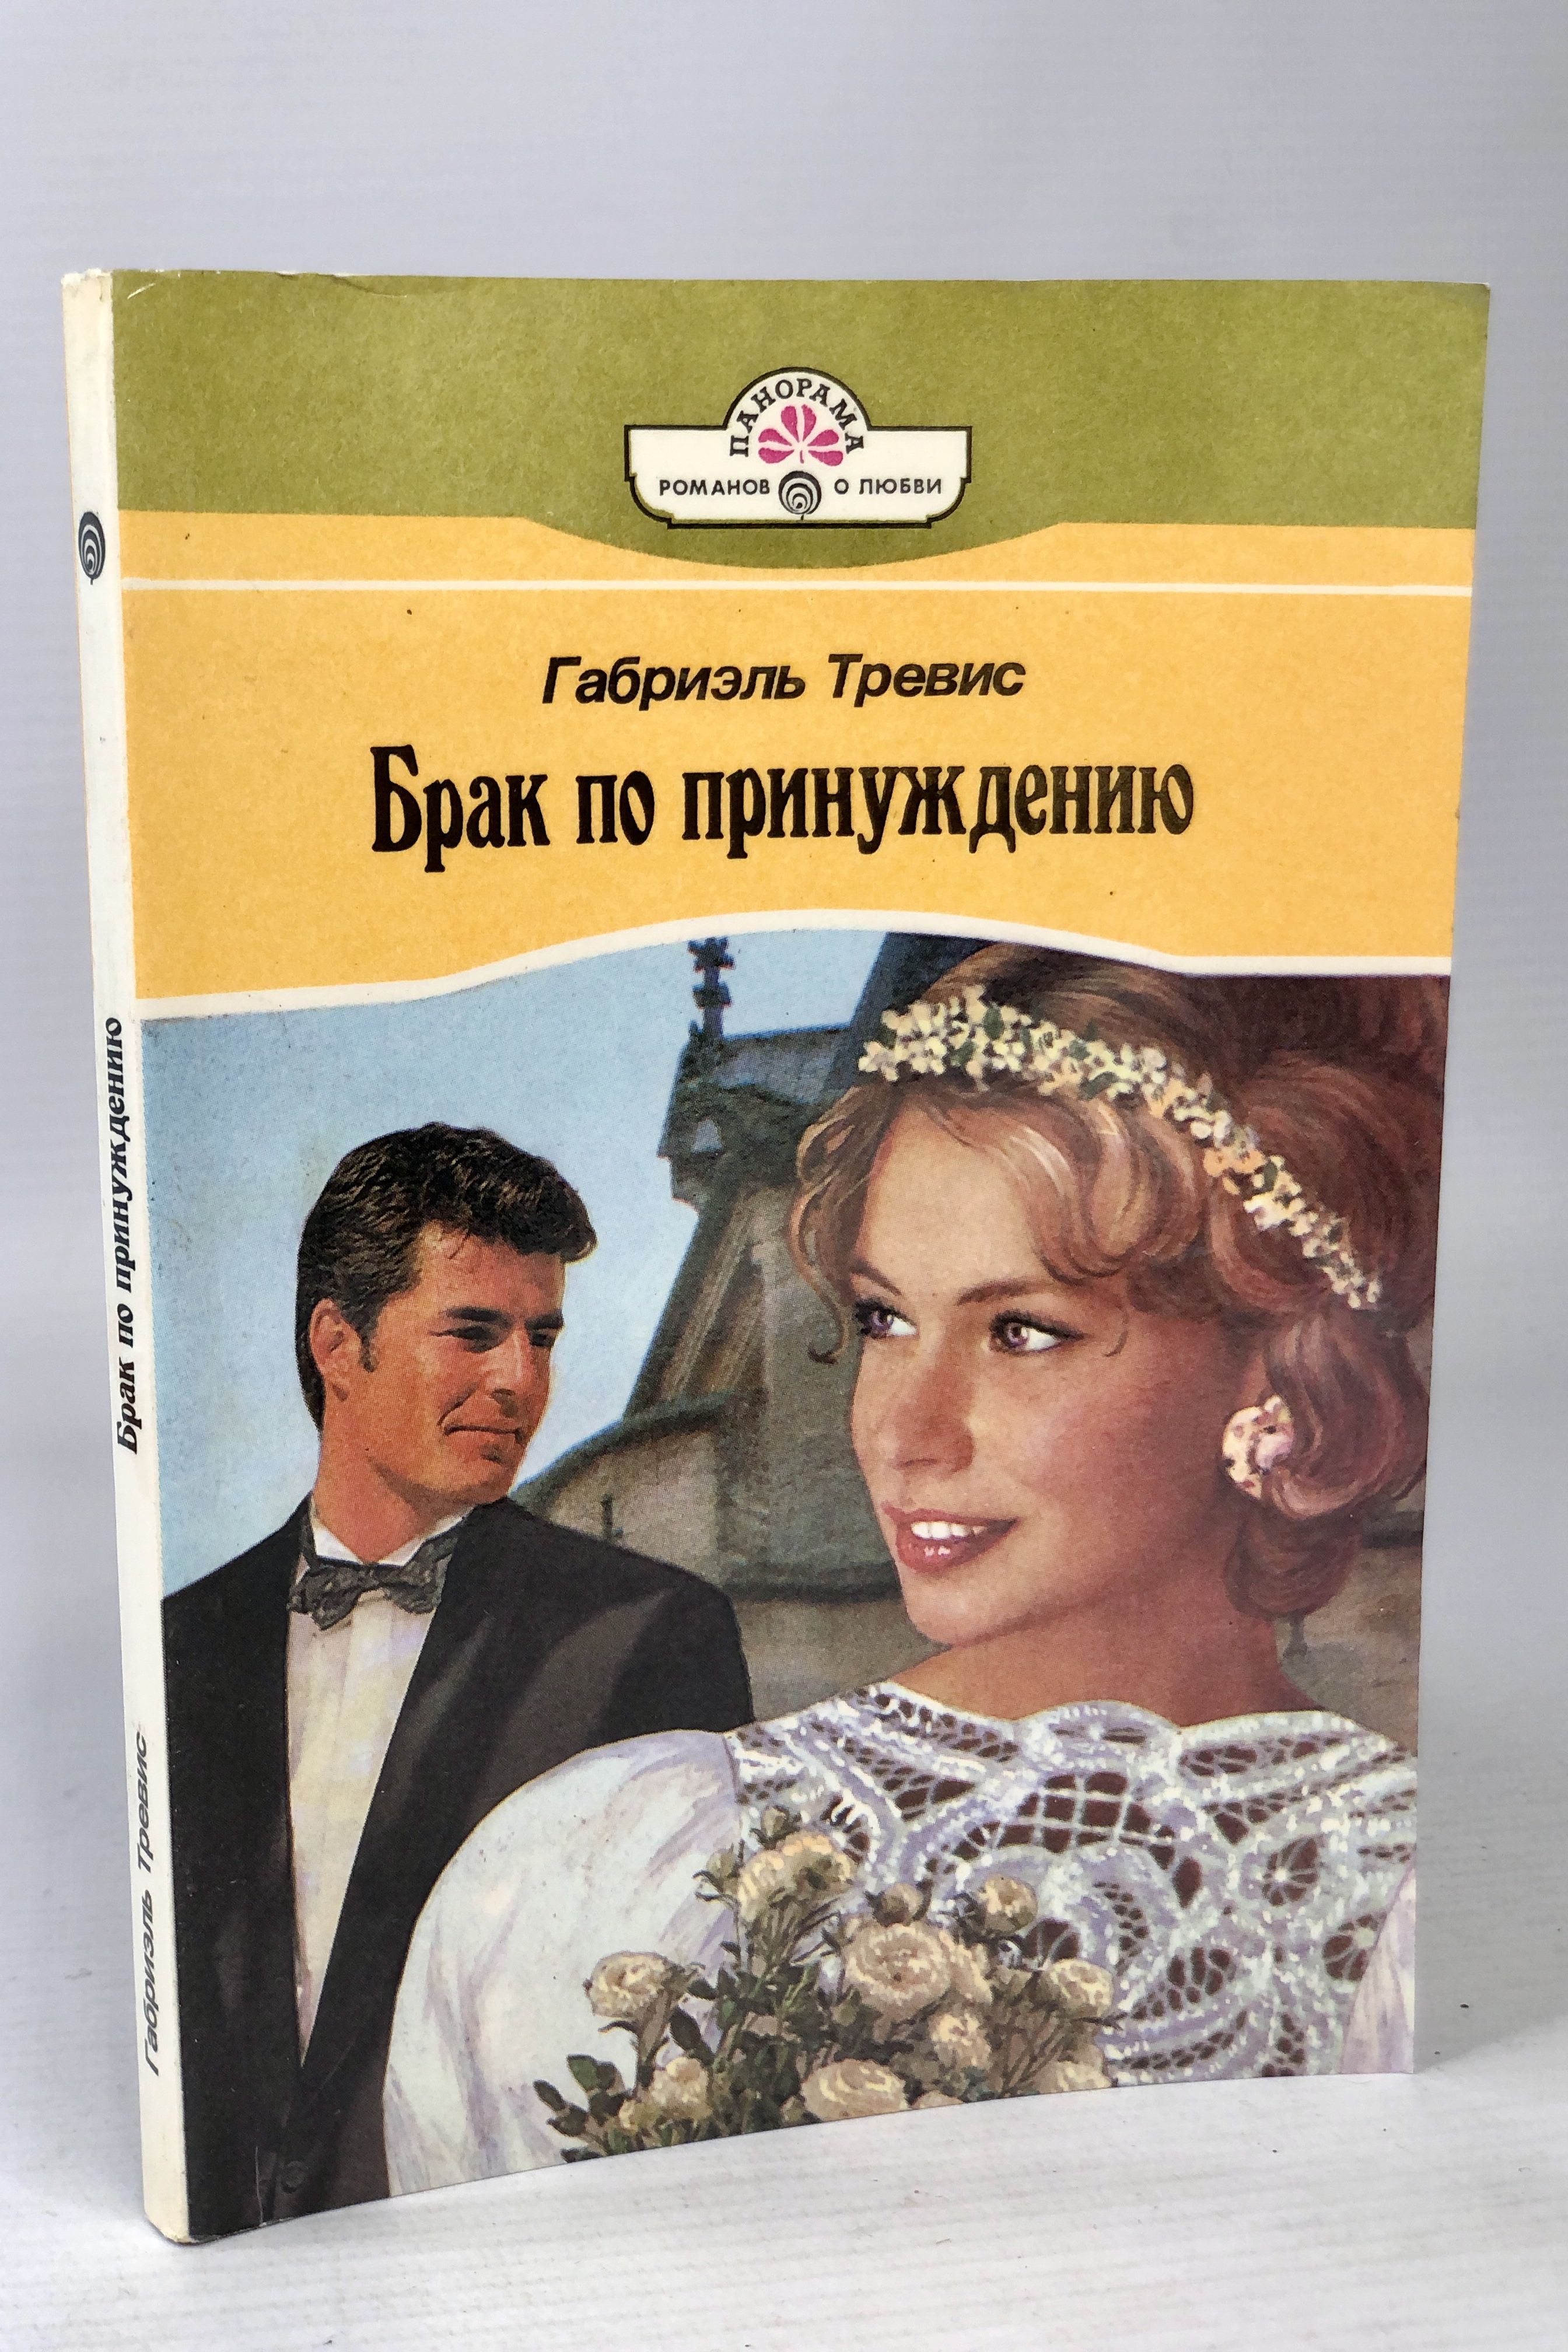 Женитьба книга отзывы. Книга про брак. Книга про брак по принуждению популярная. Образцовое супружество книга.